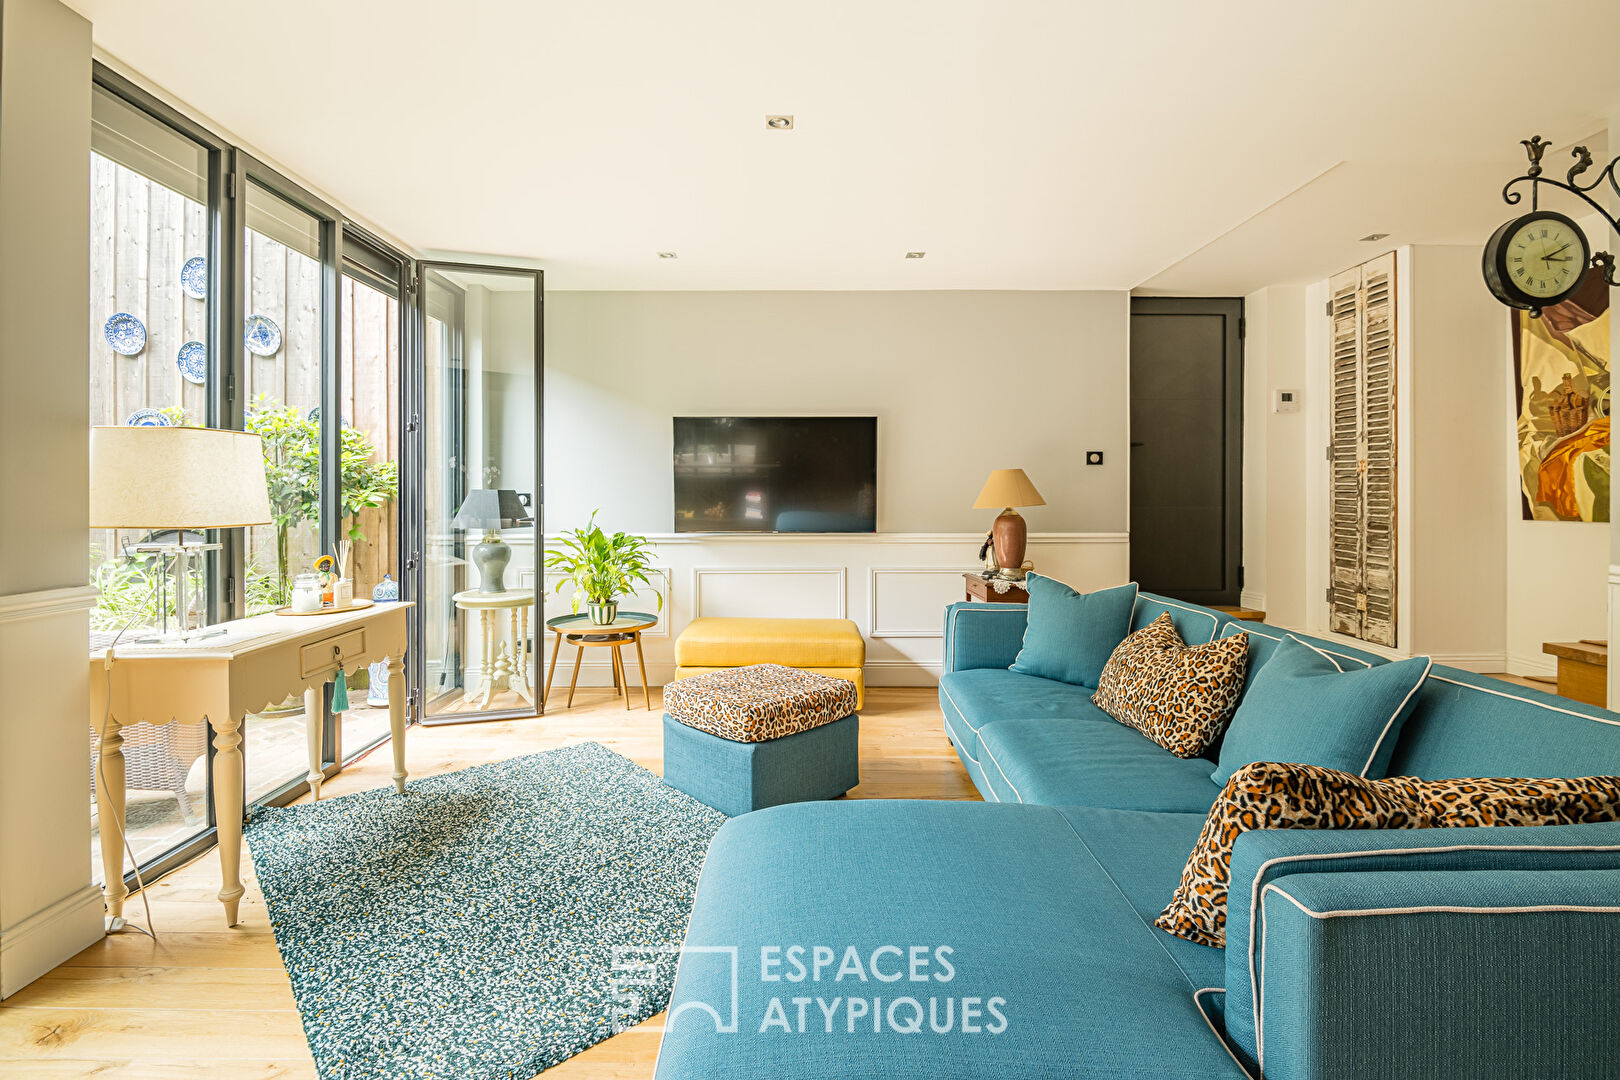 Duplex apartment with terraces in Bordeaux